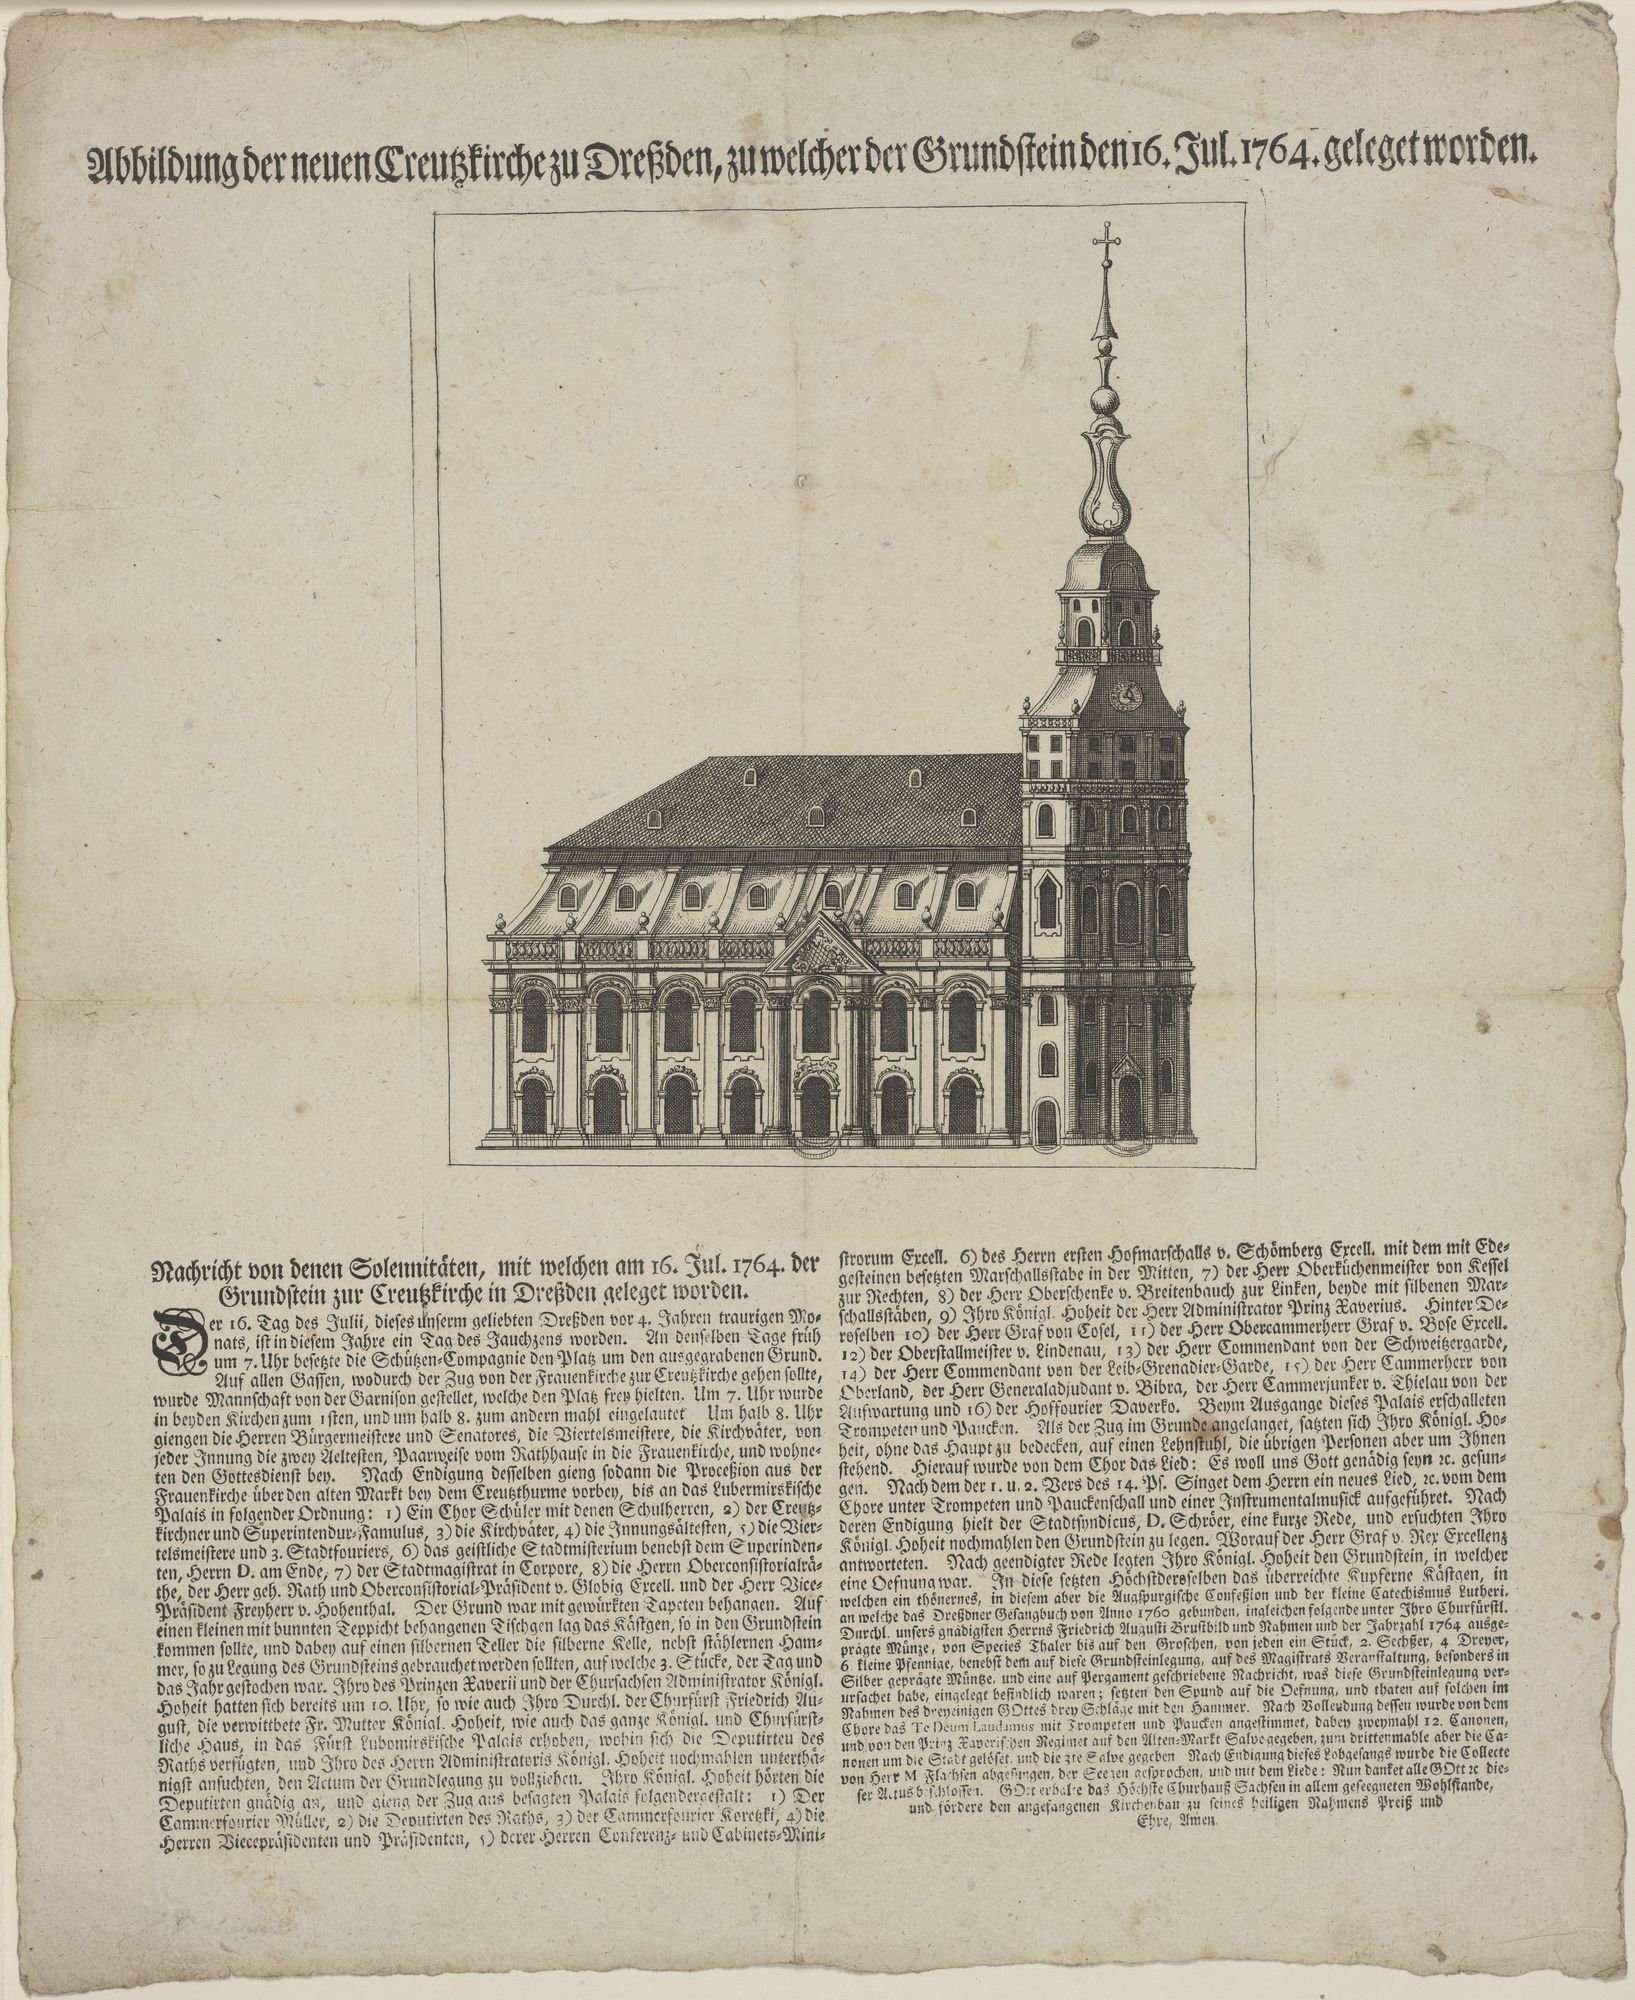 Abbildung der neuen Creuzkirche zu Dreßden, zu welcher der Grundstein den 16. Jul. 1764. geleget worden. (Kulturstiftung Sachsen-Anhalt Public Domain Mark)